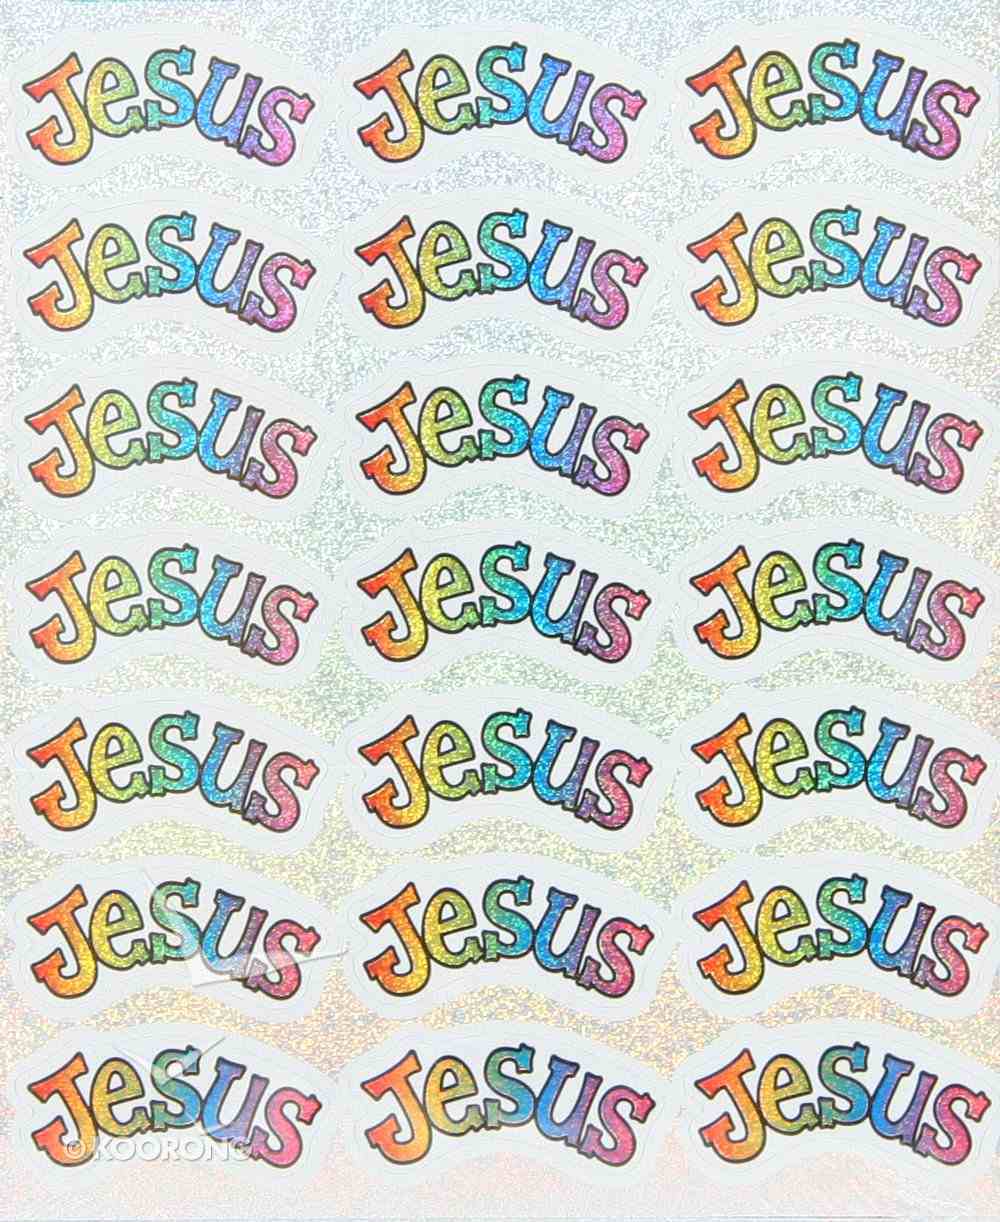 Sticker Pack: Jesus Novelty